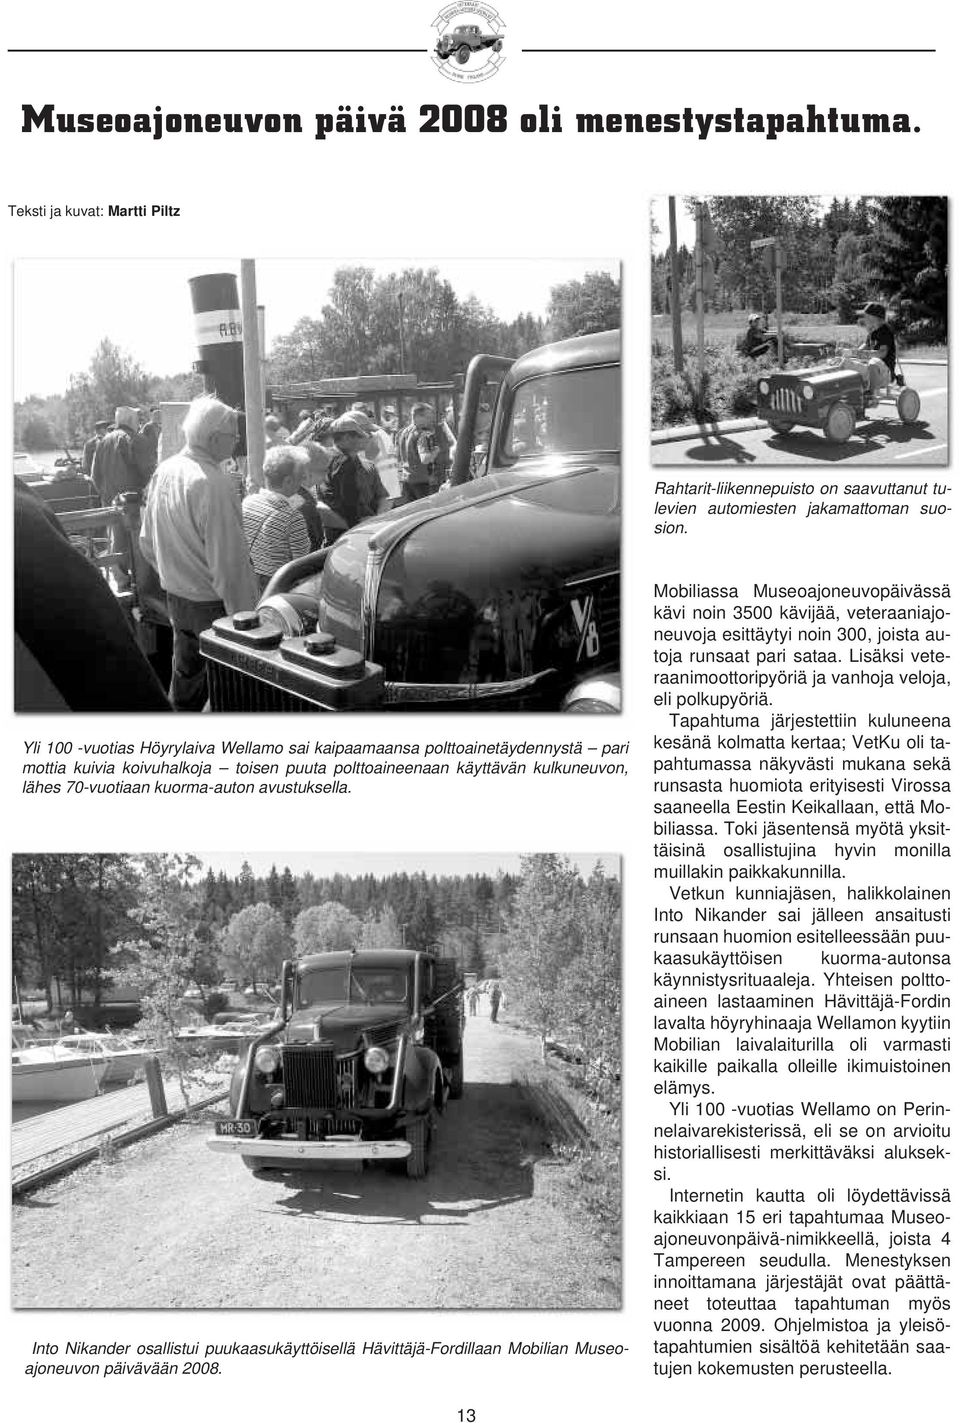 avustuksella. Into Nikander osallistui puukaasukäyttöisellä Hävittäjä-Fordillaan Mobilian Museoajoneuvon päivävään 2008.